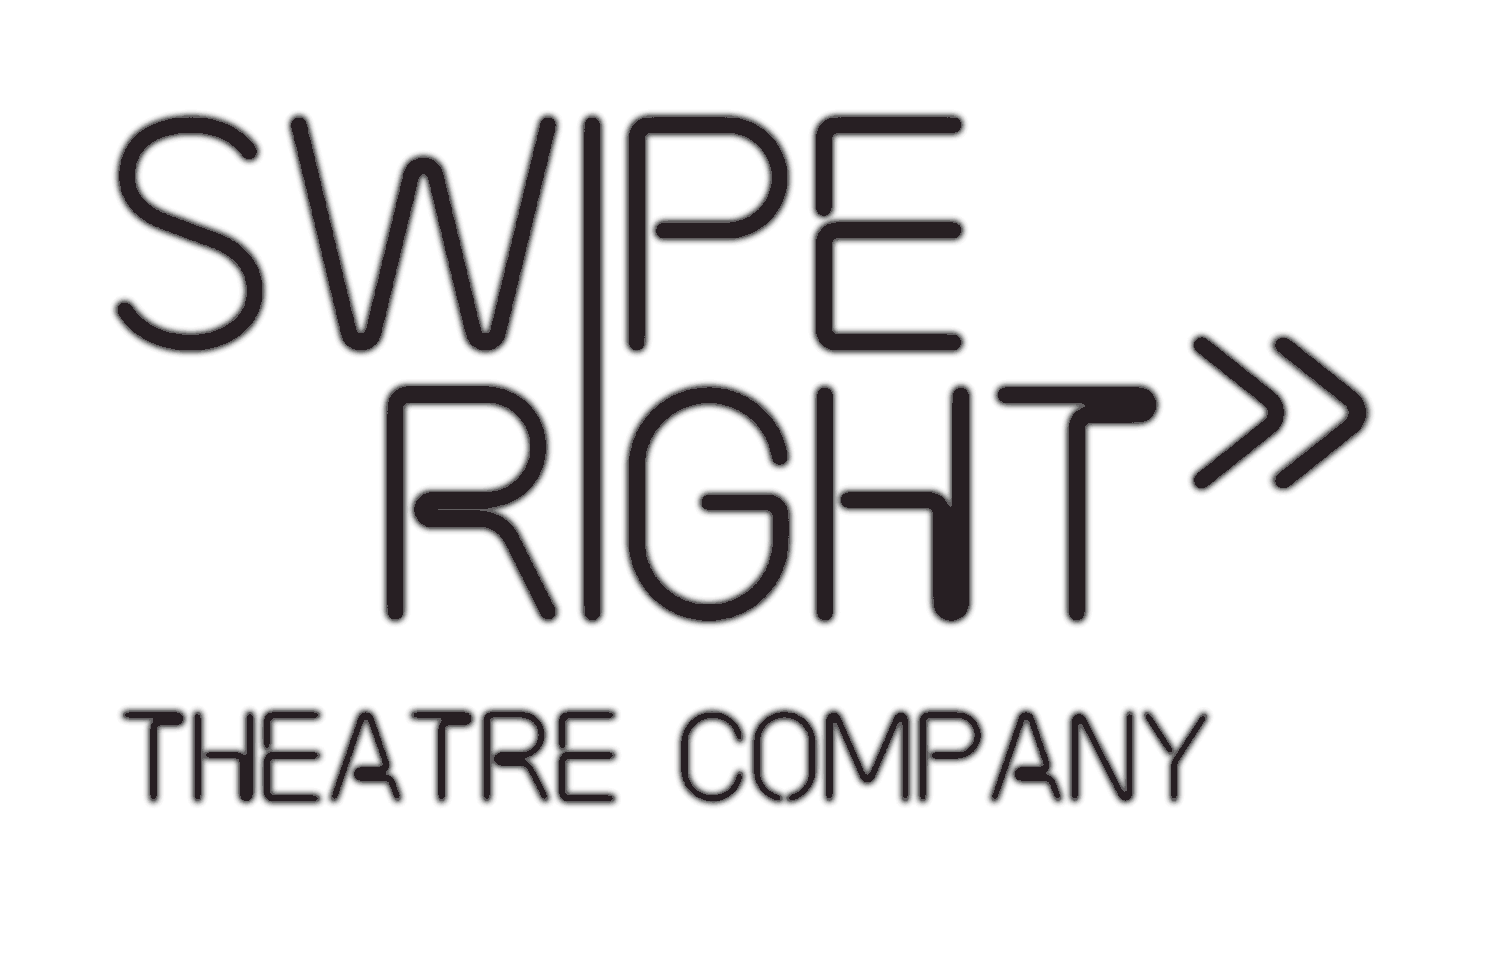 Swipe Right Theatre